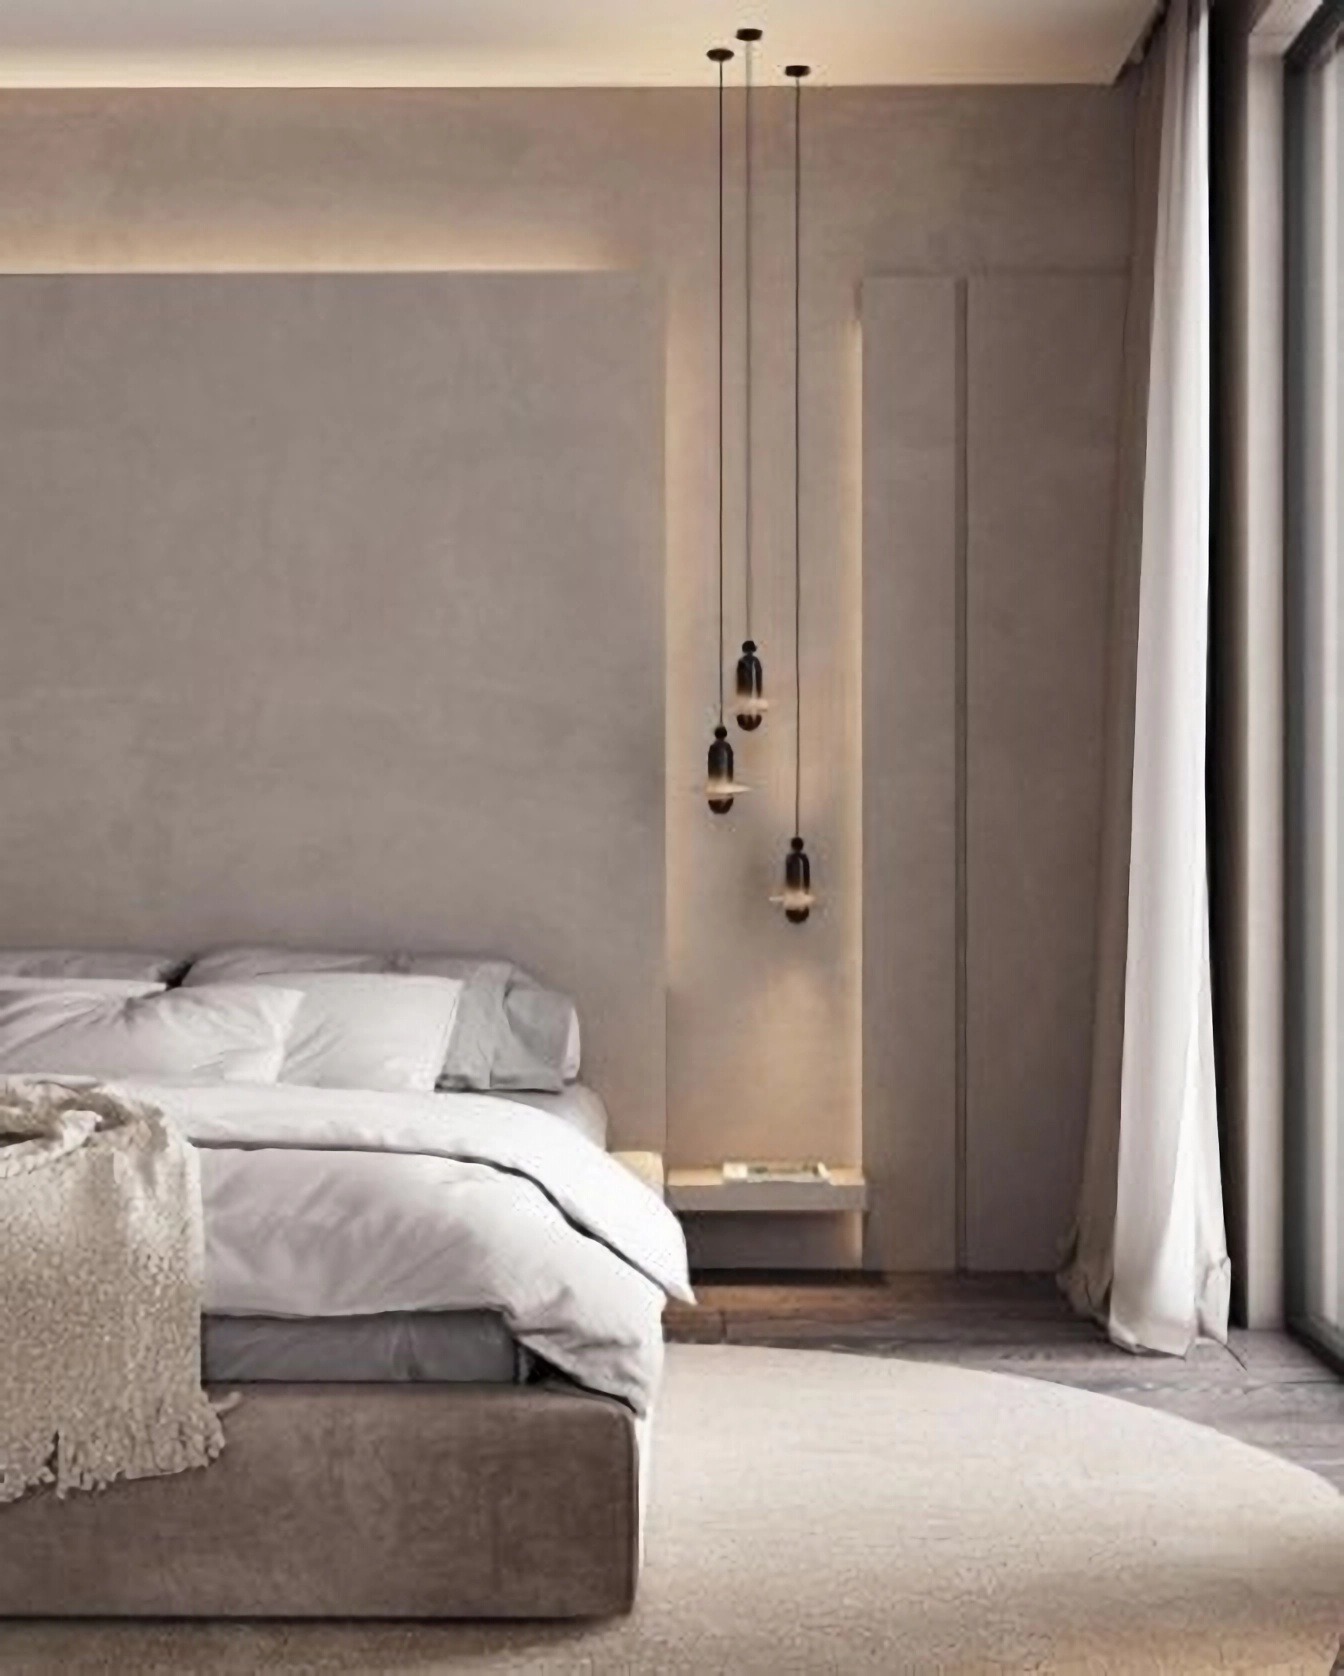 V čom spočíva interiérový minimalizmus?